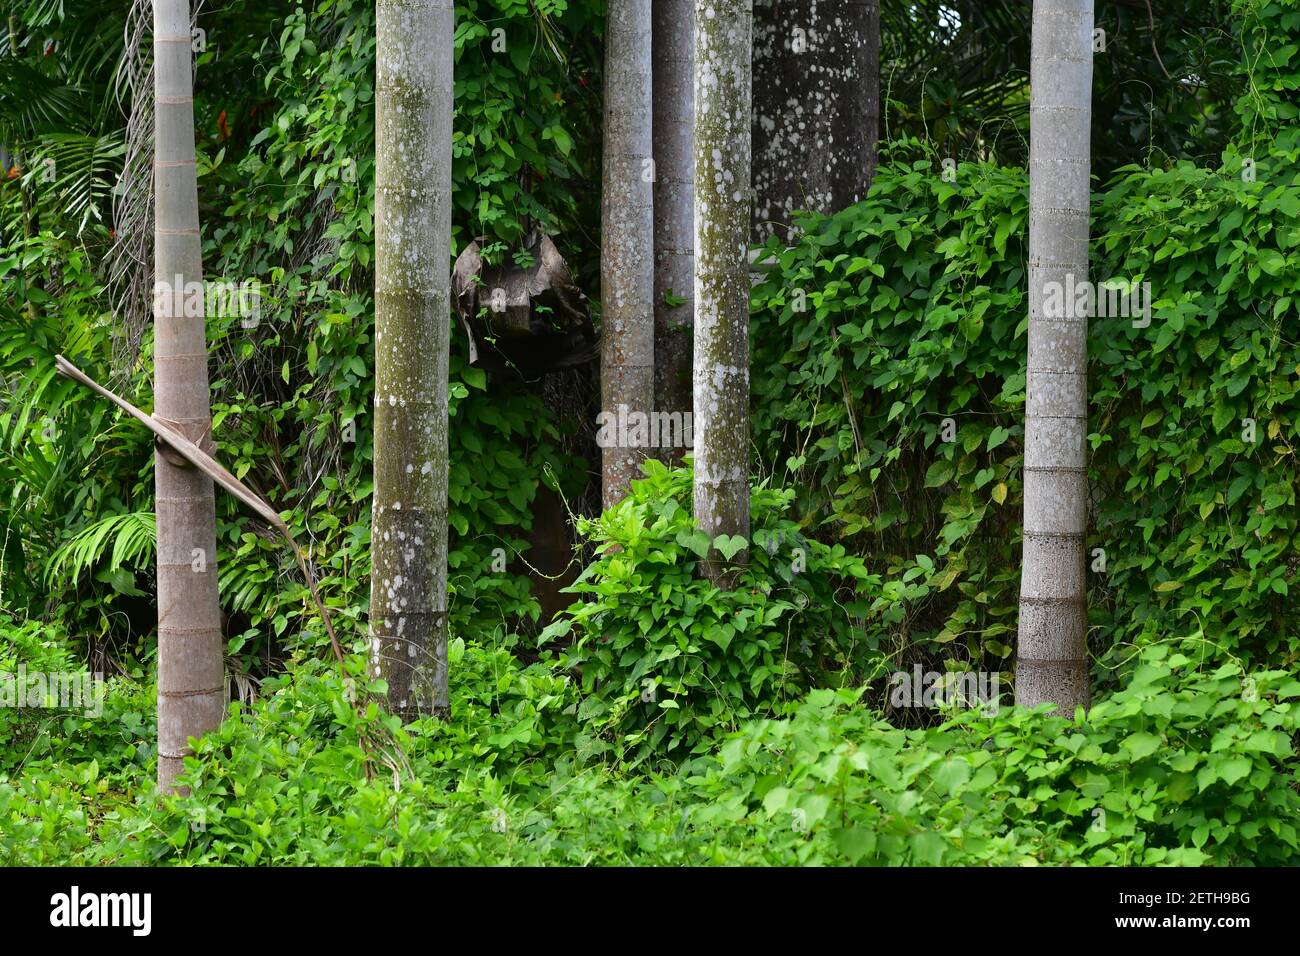 Palmengewächse (Arecaceae) Pflanzen, die in der tropischen Regenzeit der Tiwi-Inseln wachsen. Stockfoto